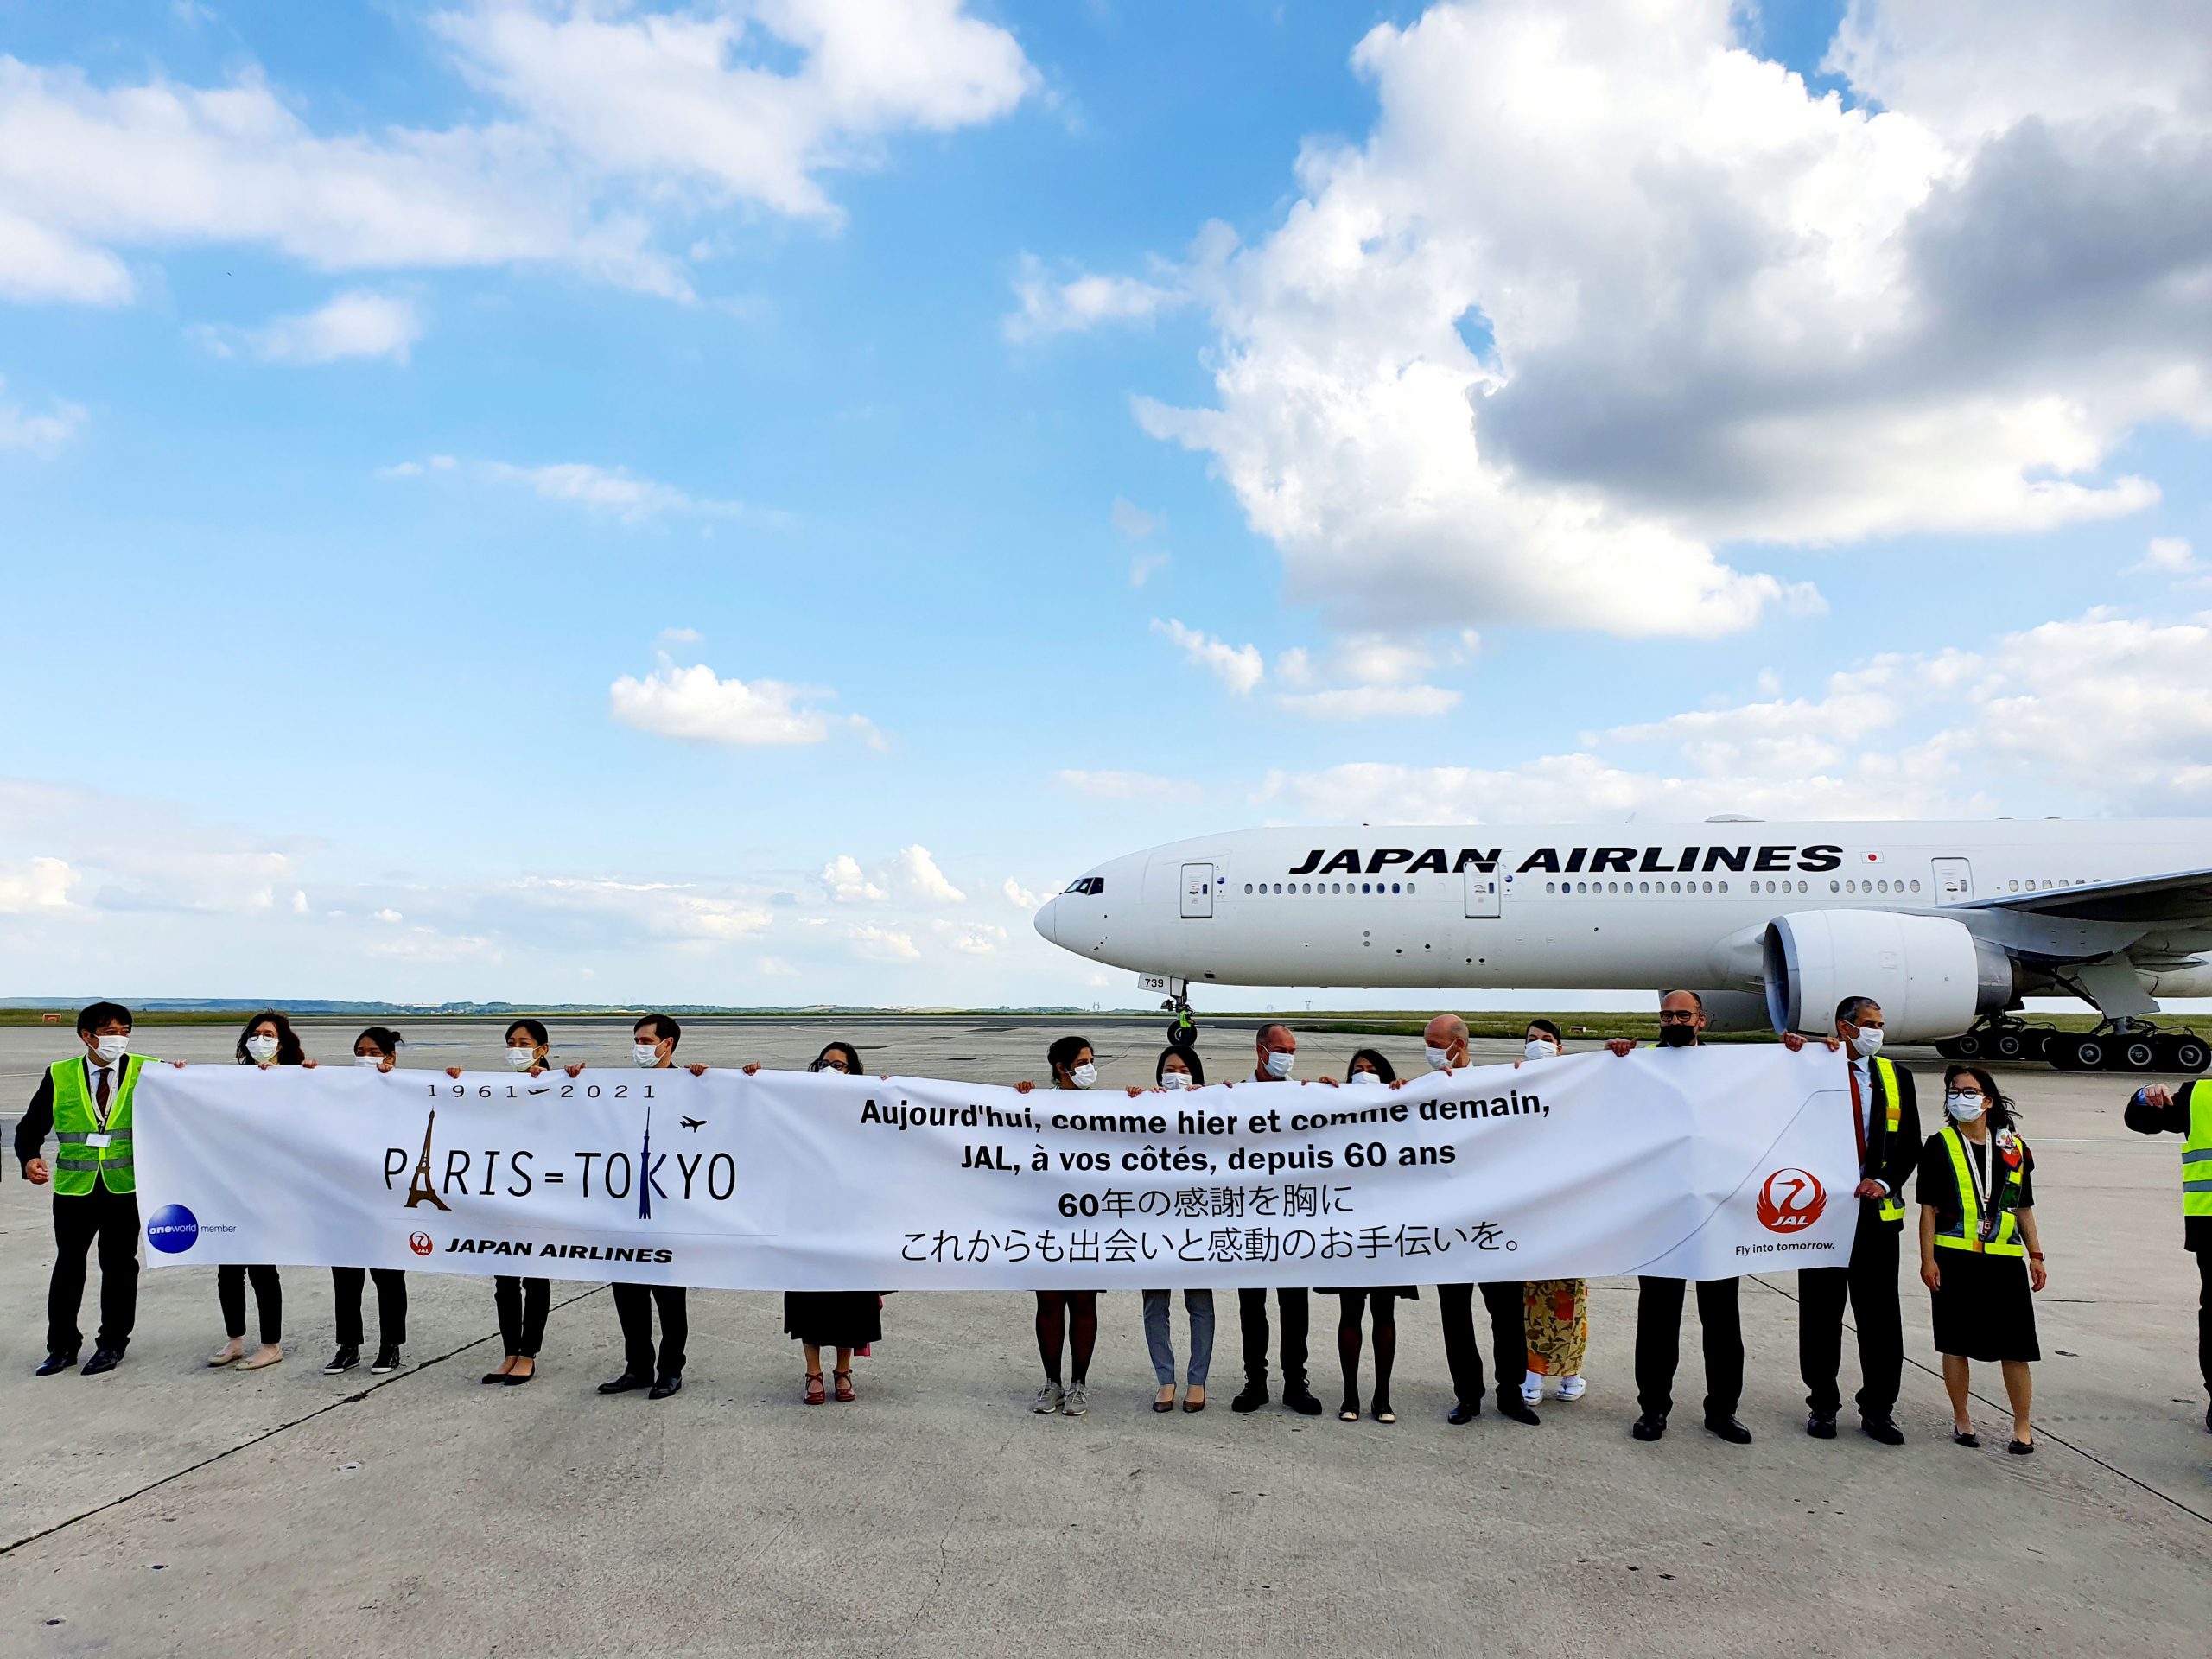 L’Union européenne signe un accord aérien avec le Japon 22 Air Journal